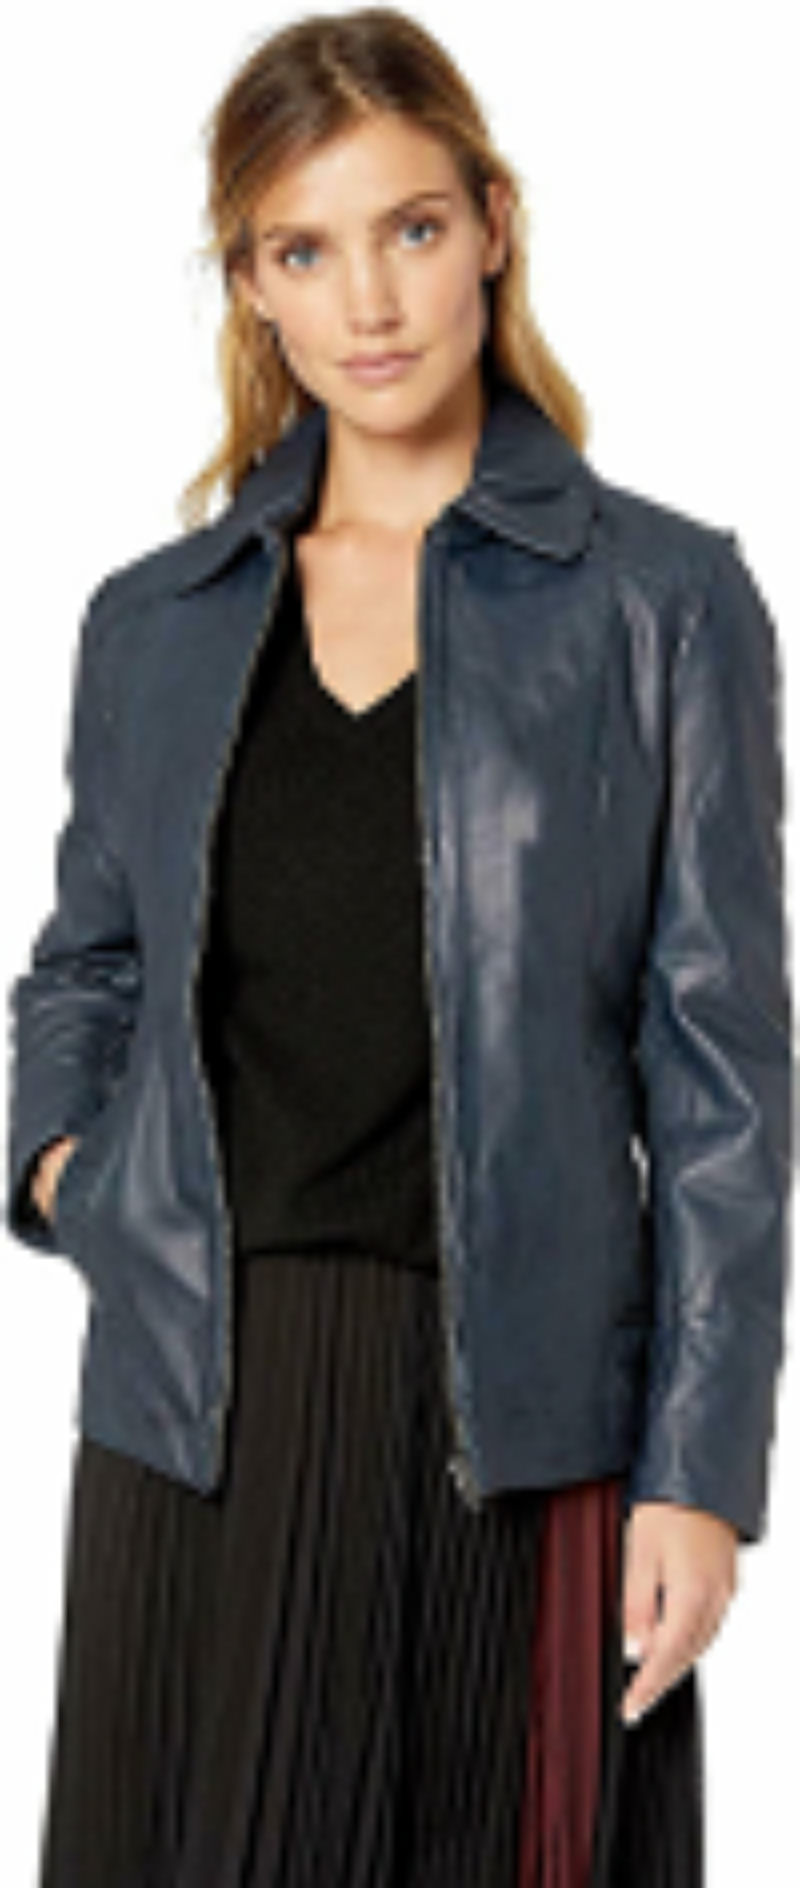 NOORA Womens Lambskin Navy Blue Leather Jacket Motorcycle Slim fit Biker Jacket With Zipper Closure YK064